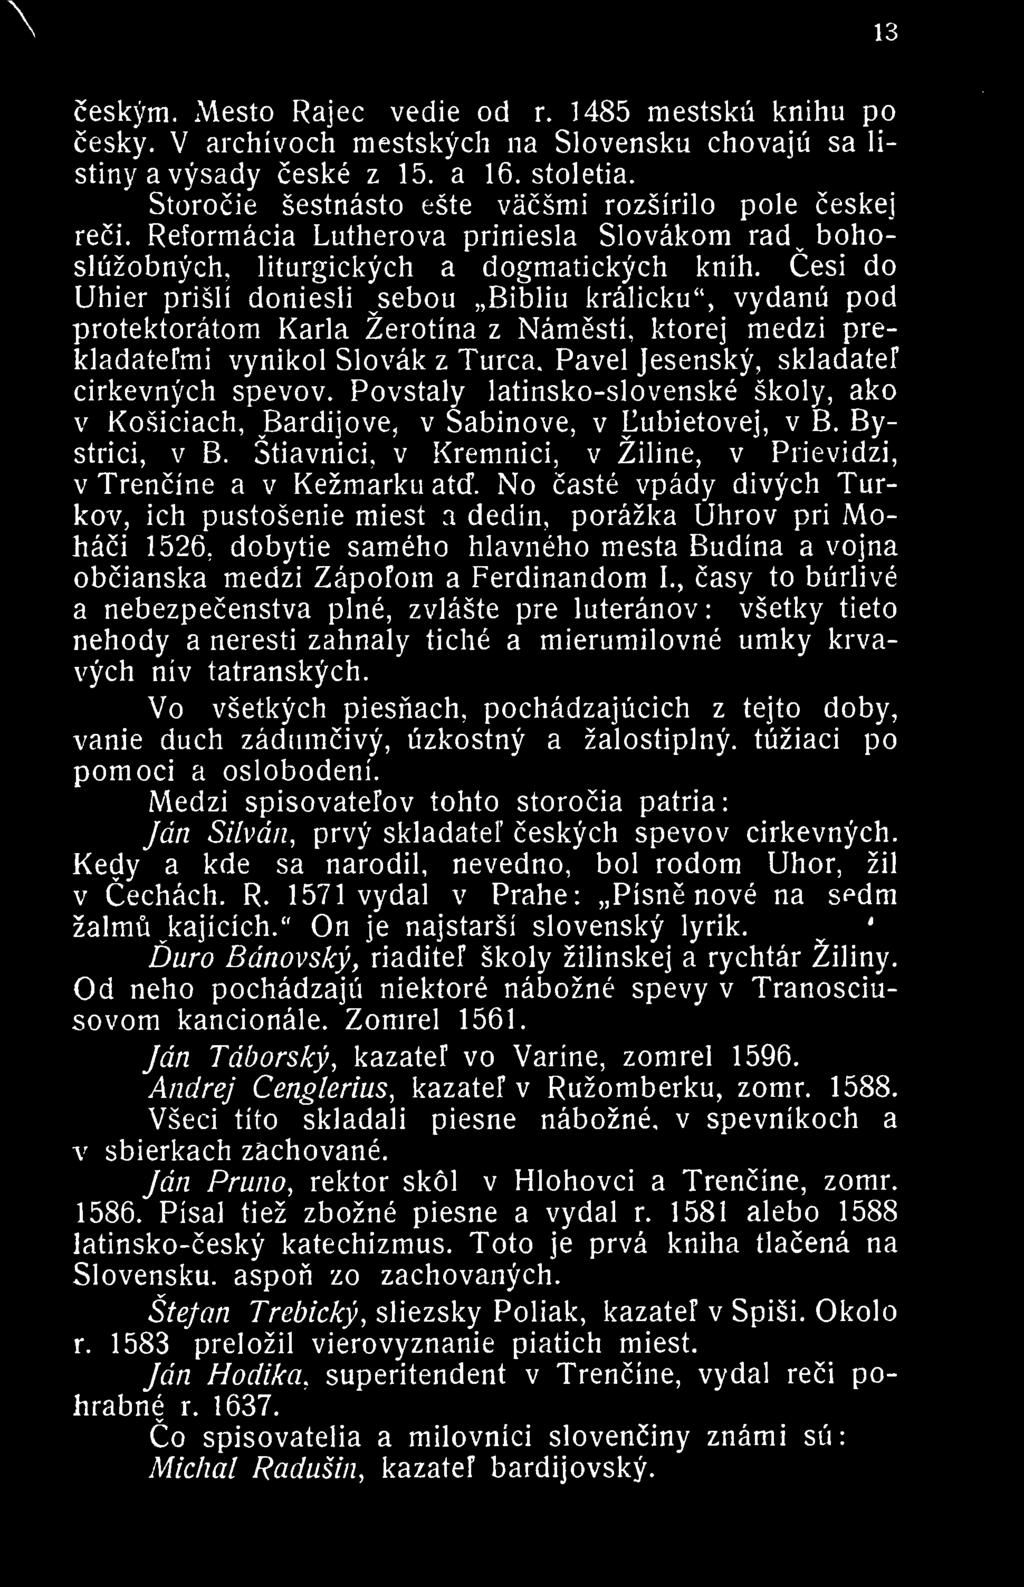 Cesi do Uhier prisli doniesli sebou Bibliu kralicku", vydanu pod protektoratom Karla Zerotina z Namesti, ktorej medzi prekladatefmi vynikol Slovak z Turca, Pavel Jesensky, skladatef cirkevnych spevov.